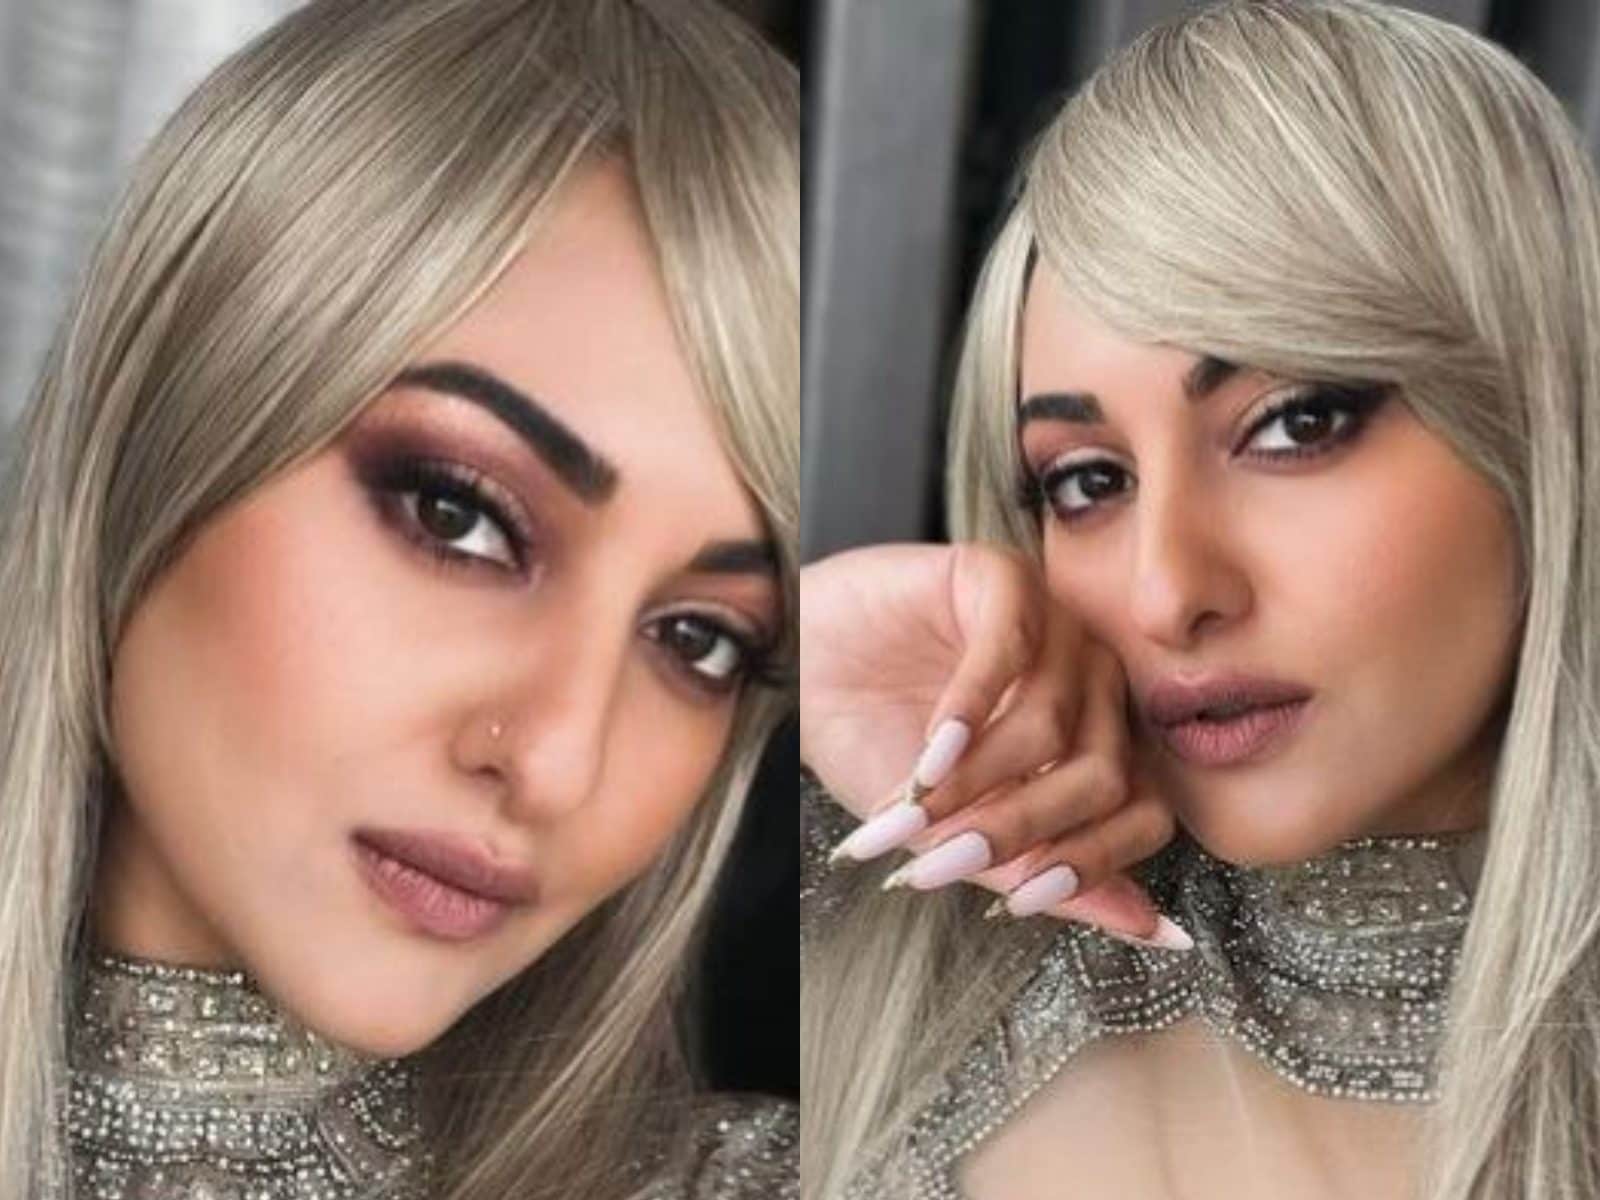 Sonakshi Sinha Ke Sex Photo - Sonakshi Sinha Flaunts Her Look in Blonde Hair in Latest Instagram Post,  See Pics - News18